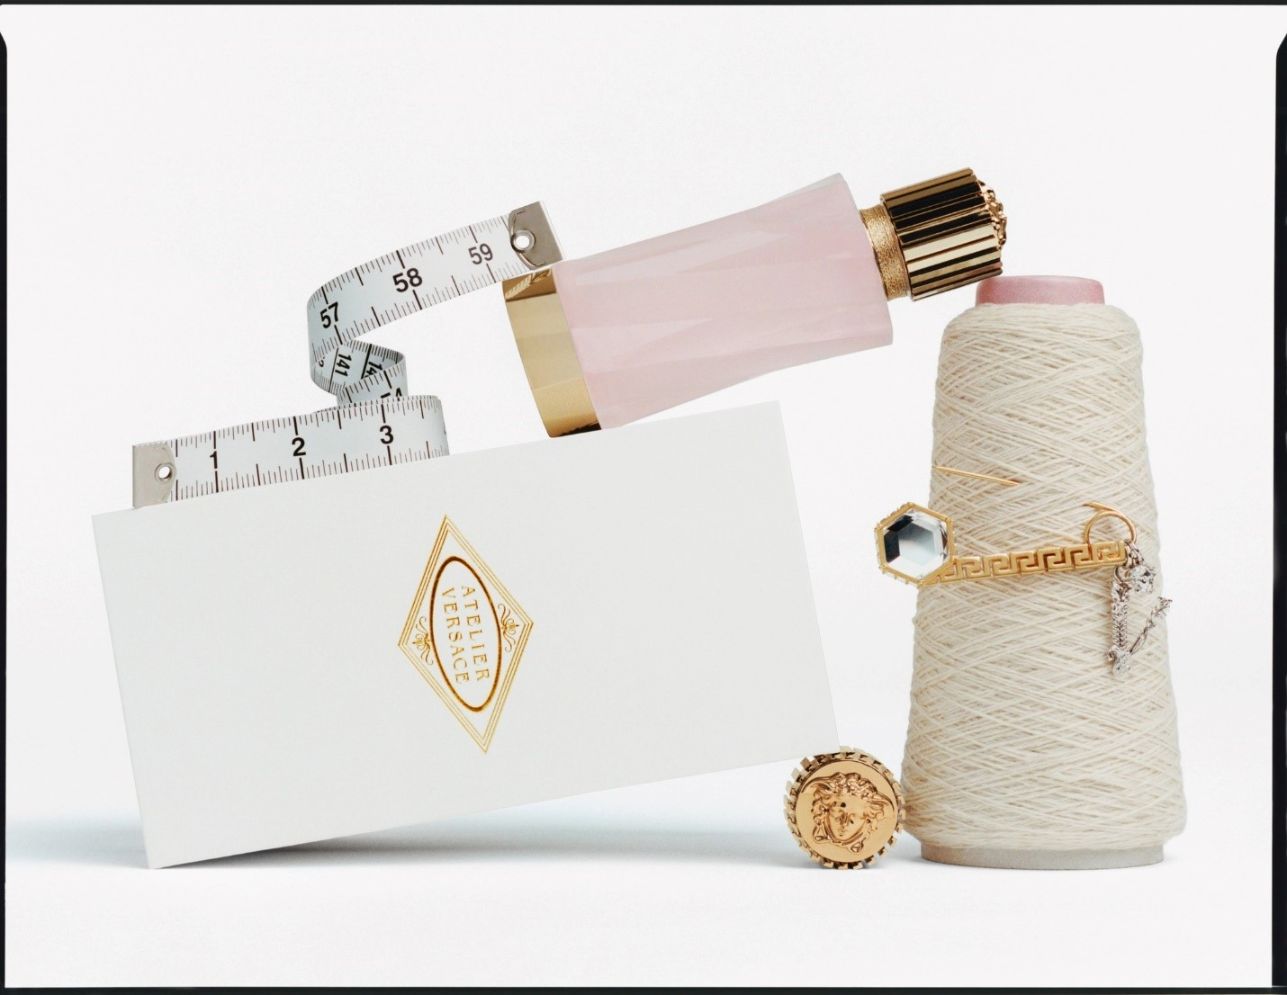 Atelier Versace 3 Atelier Versace và nghệ thuật may đo hương thơm